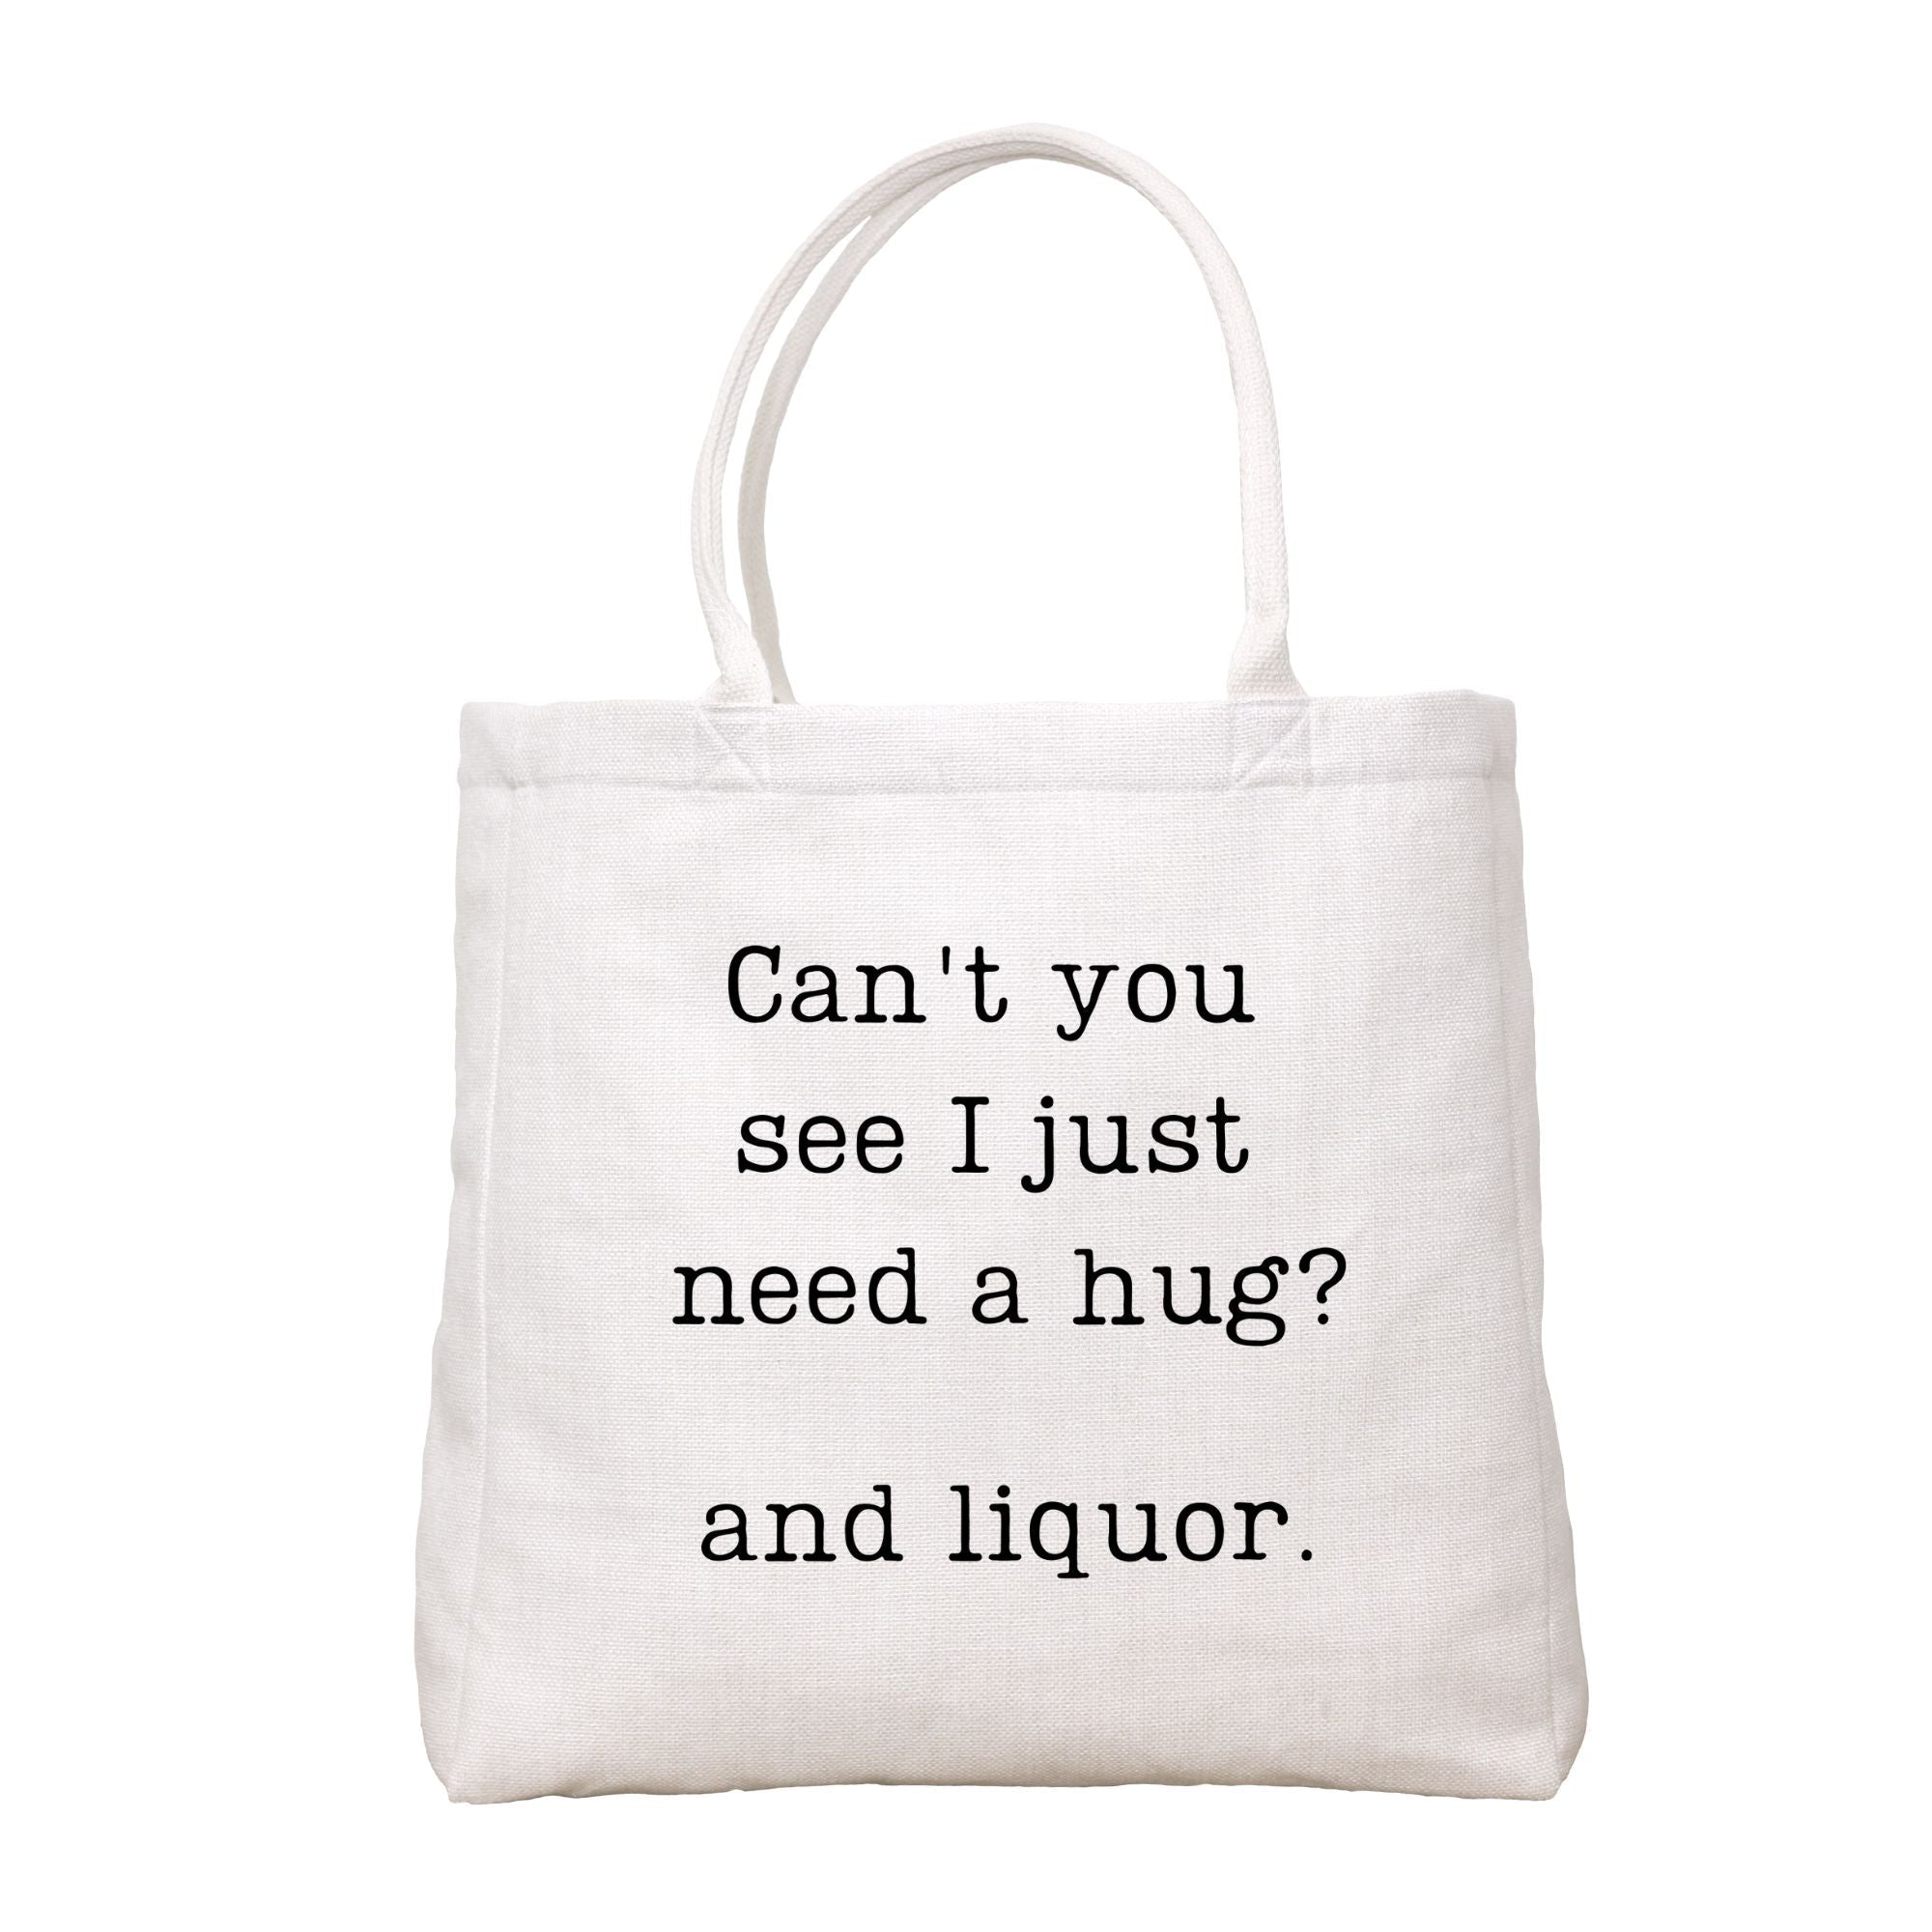 Need A Hug Tote Bag